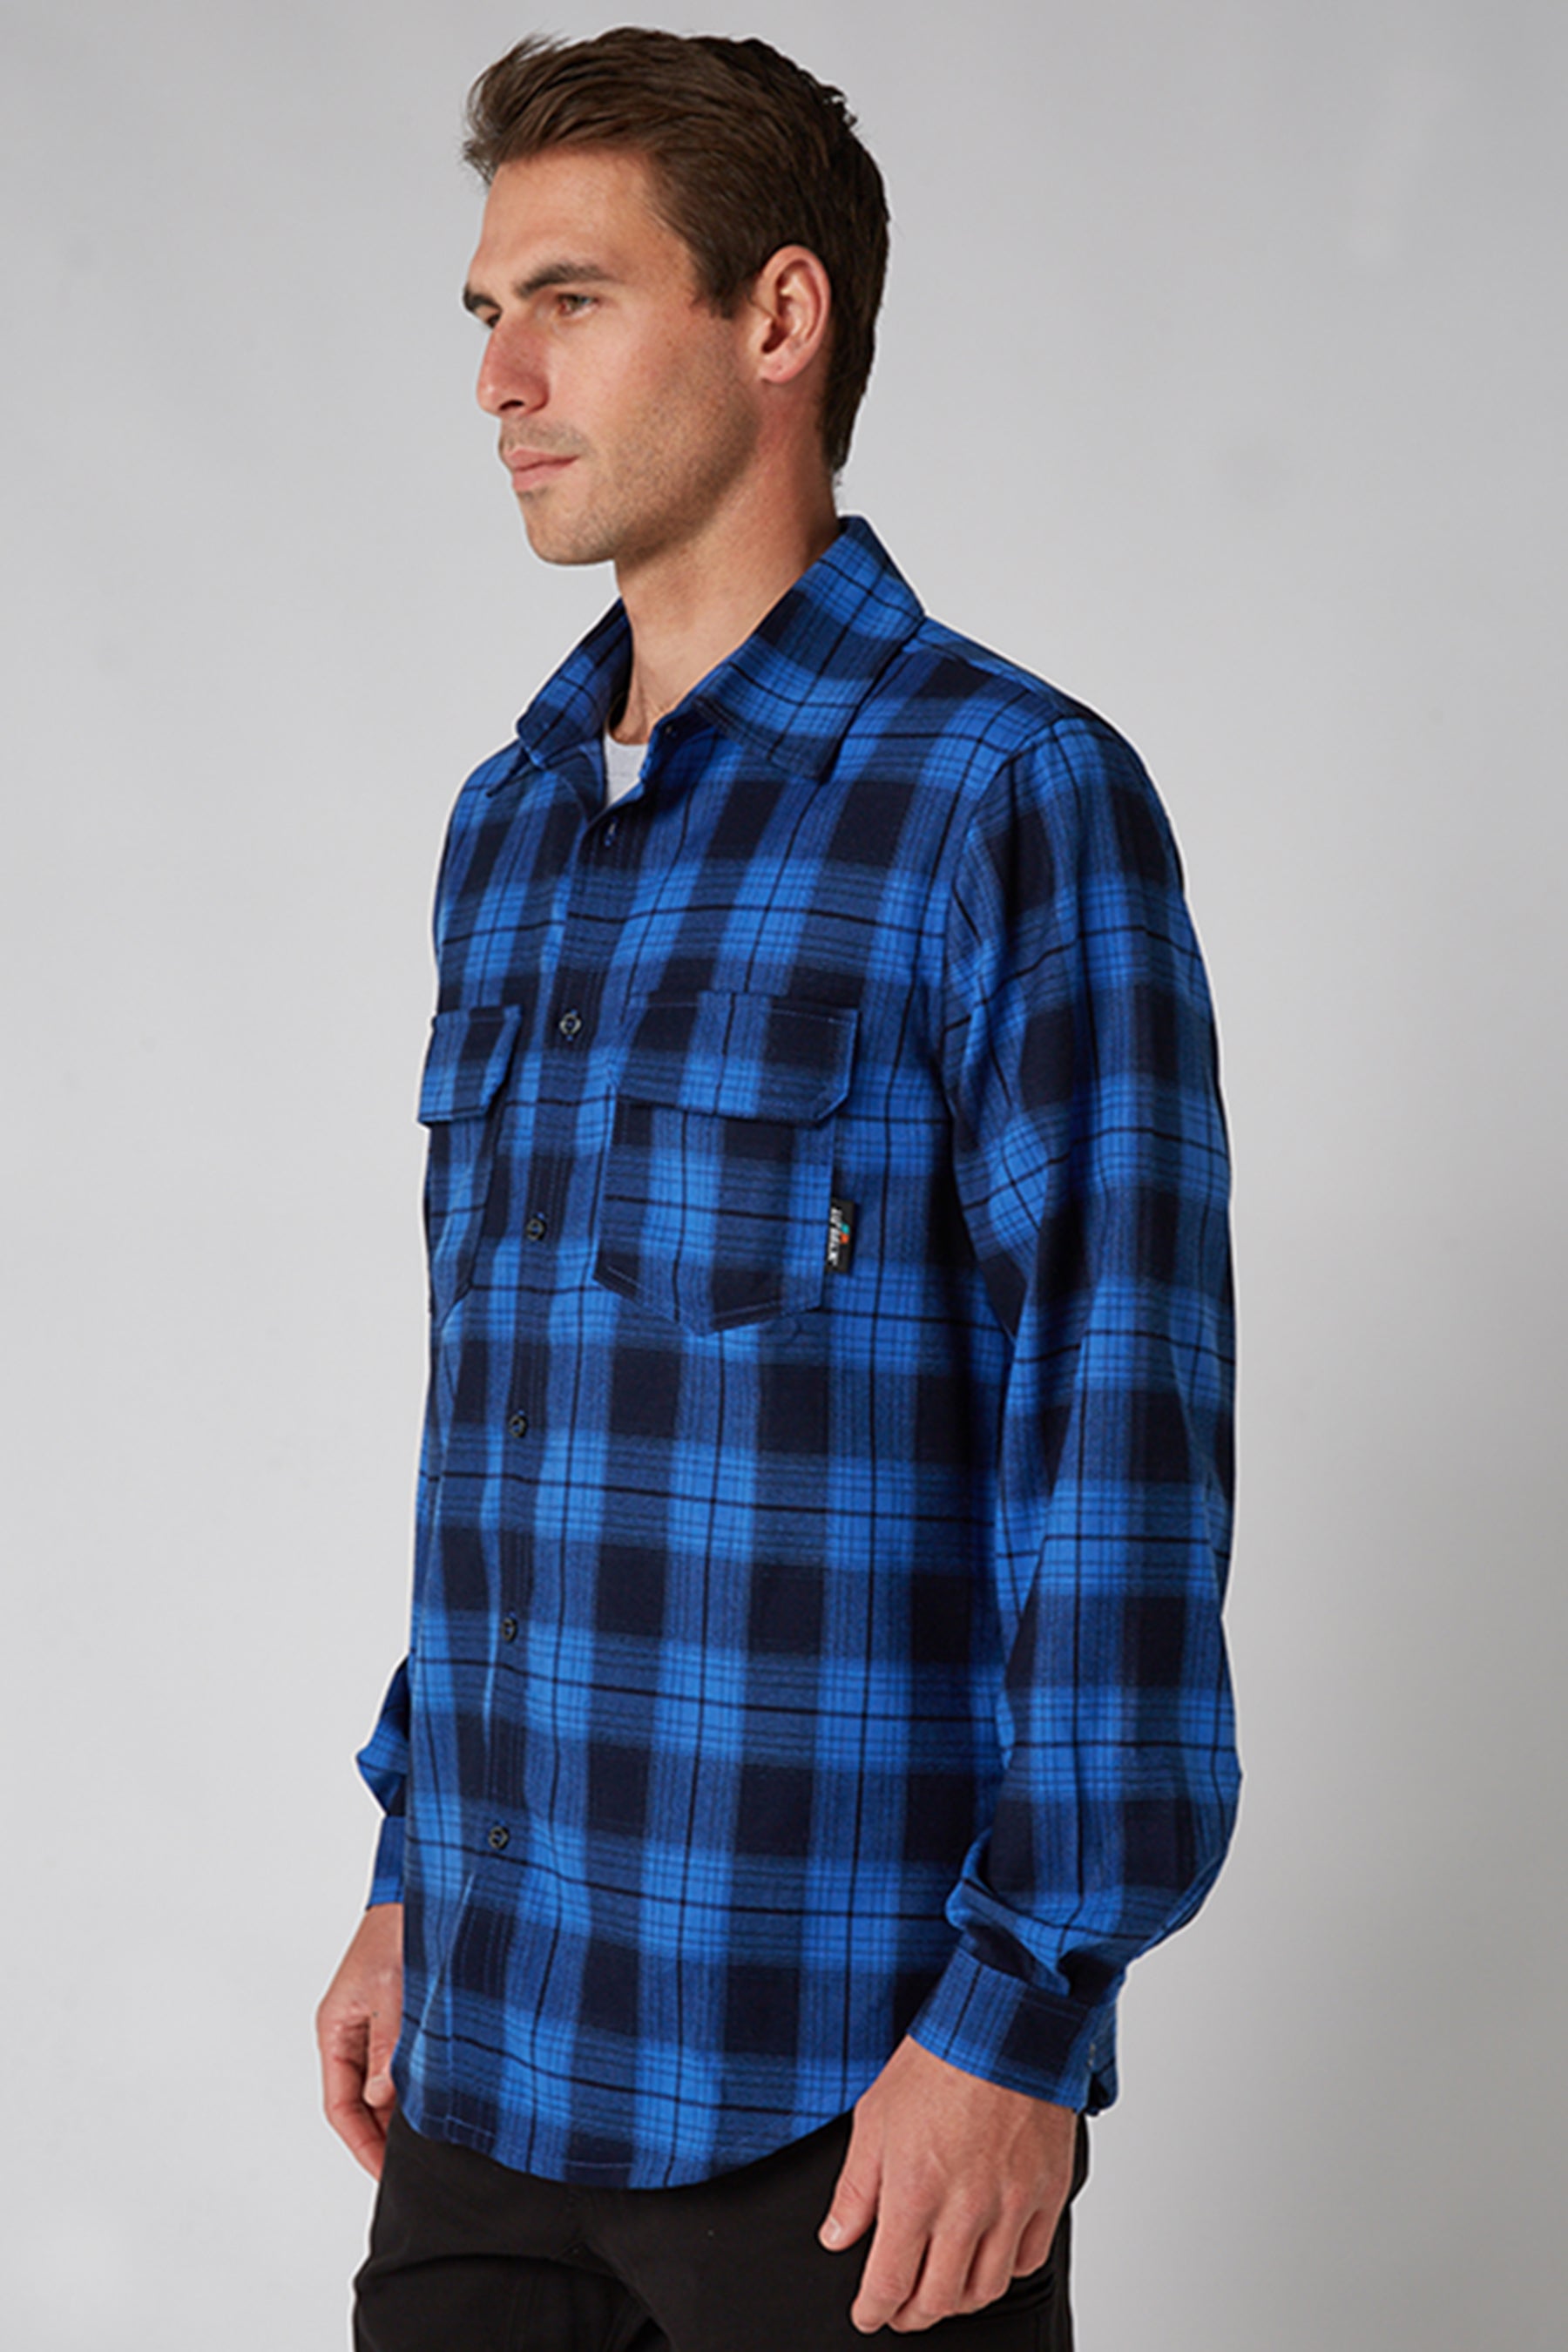 JP Flannel Shirt - Blue